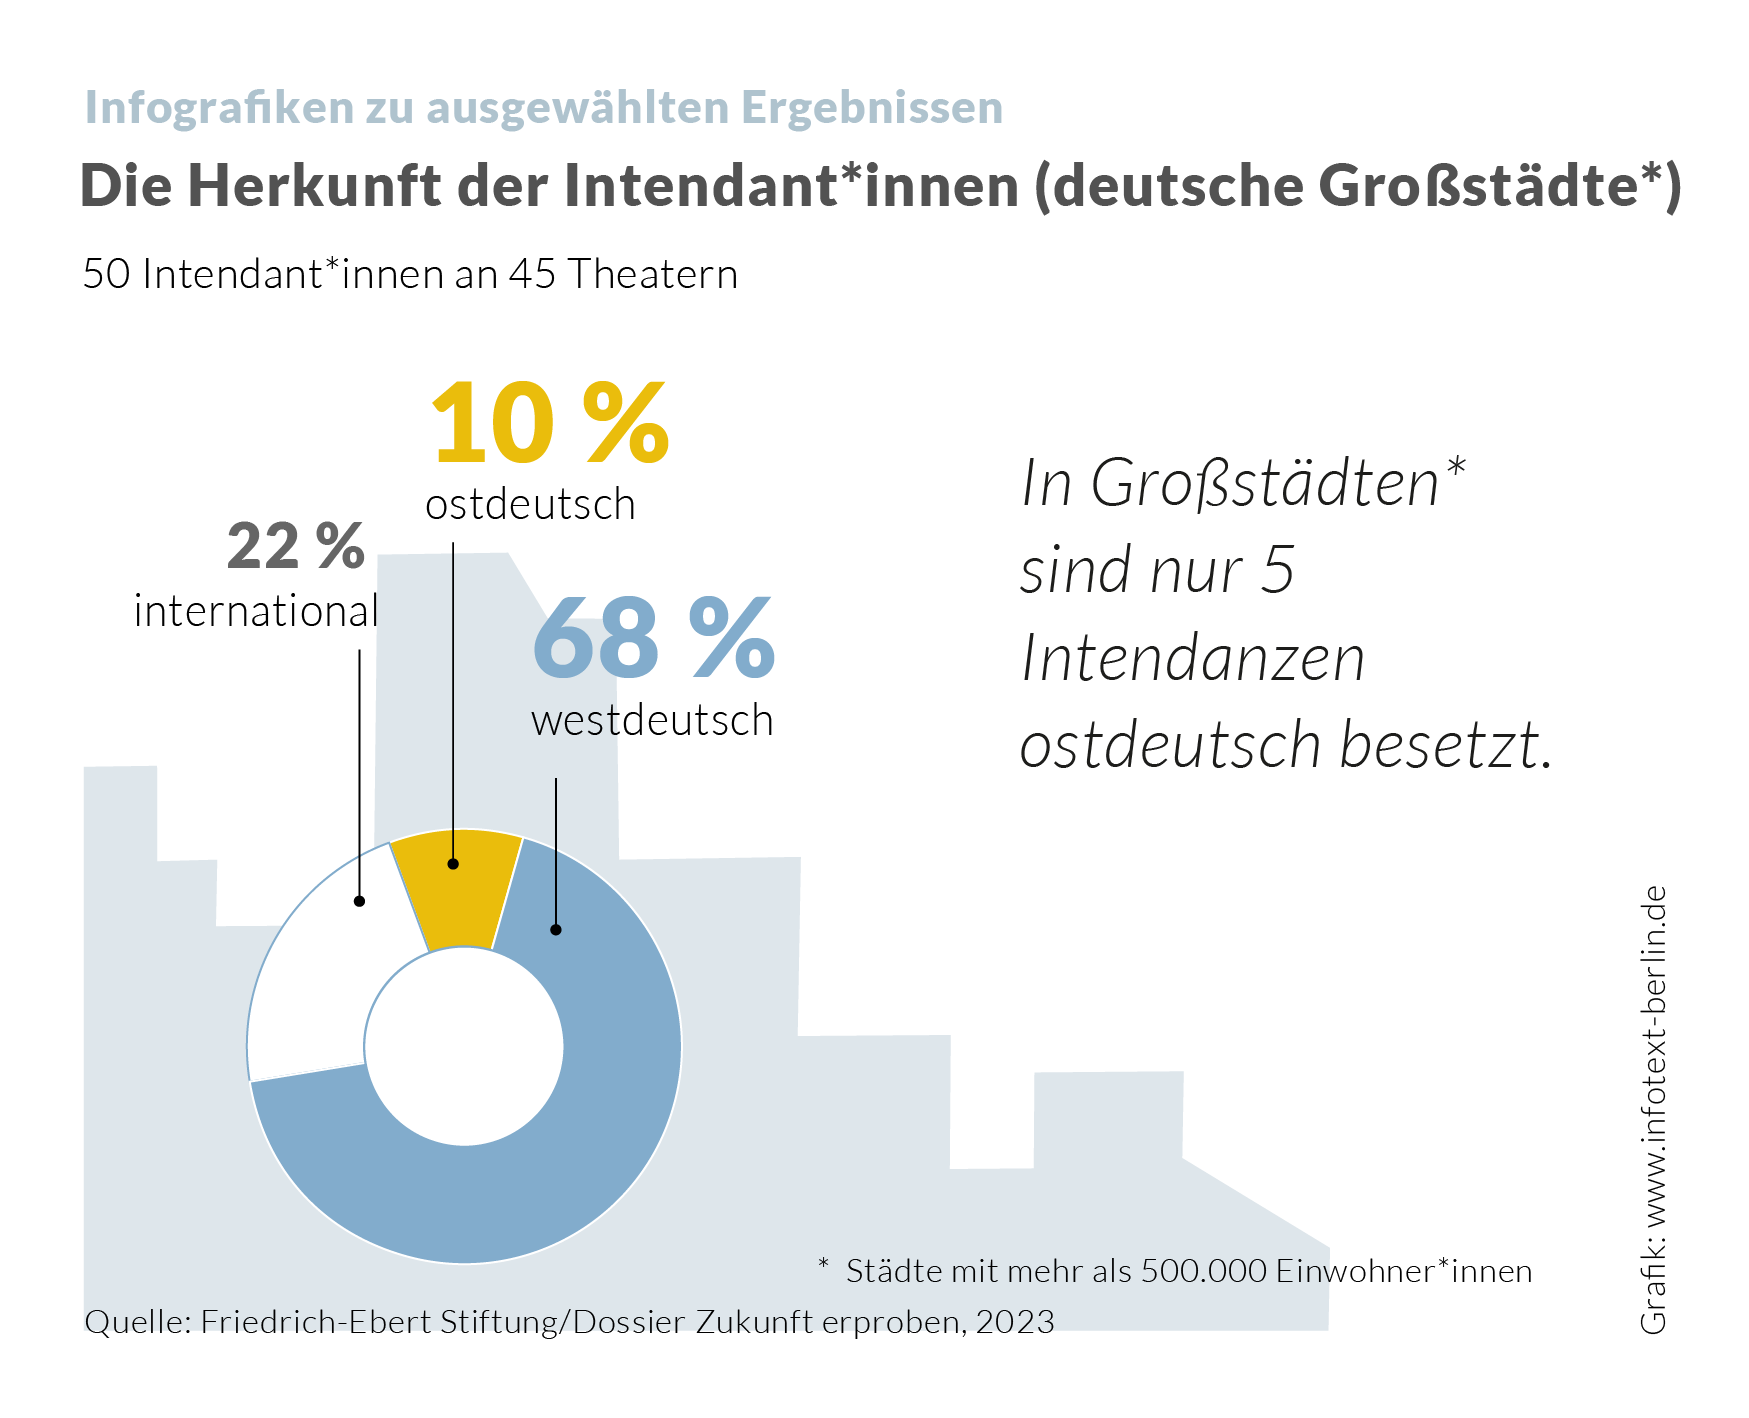 Infografik zur Herkunft deutscher Intendant*innen nach Großstädten